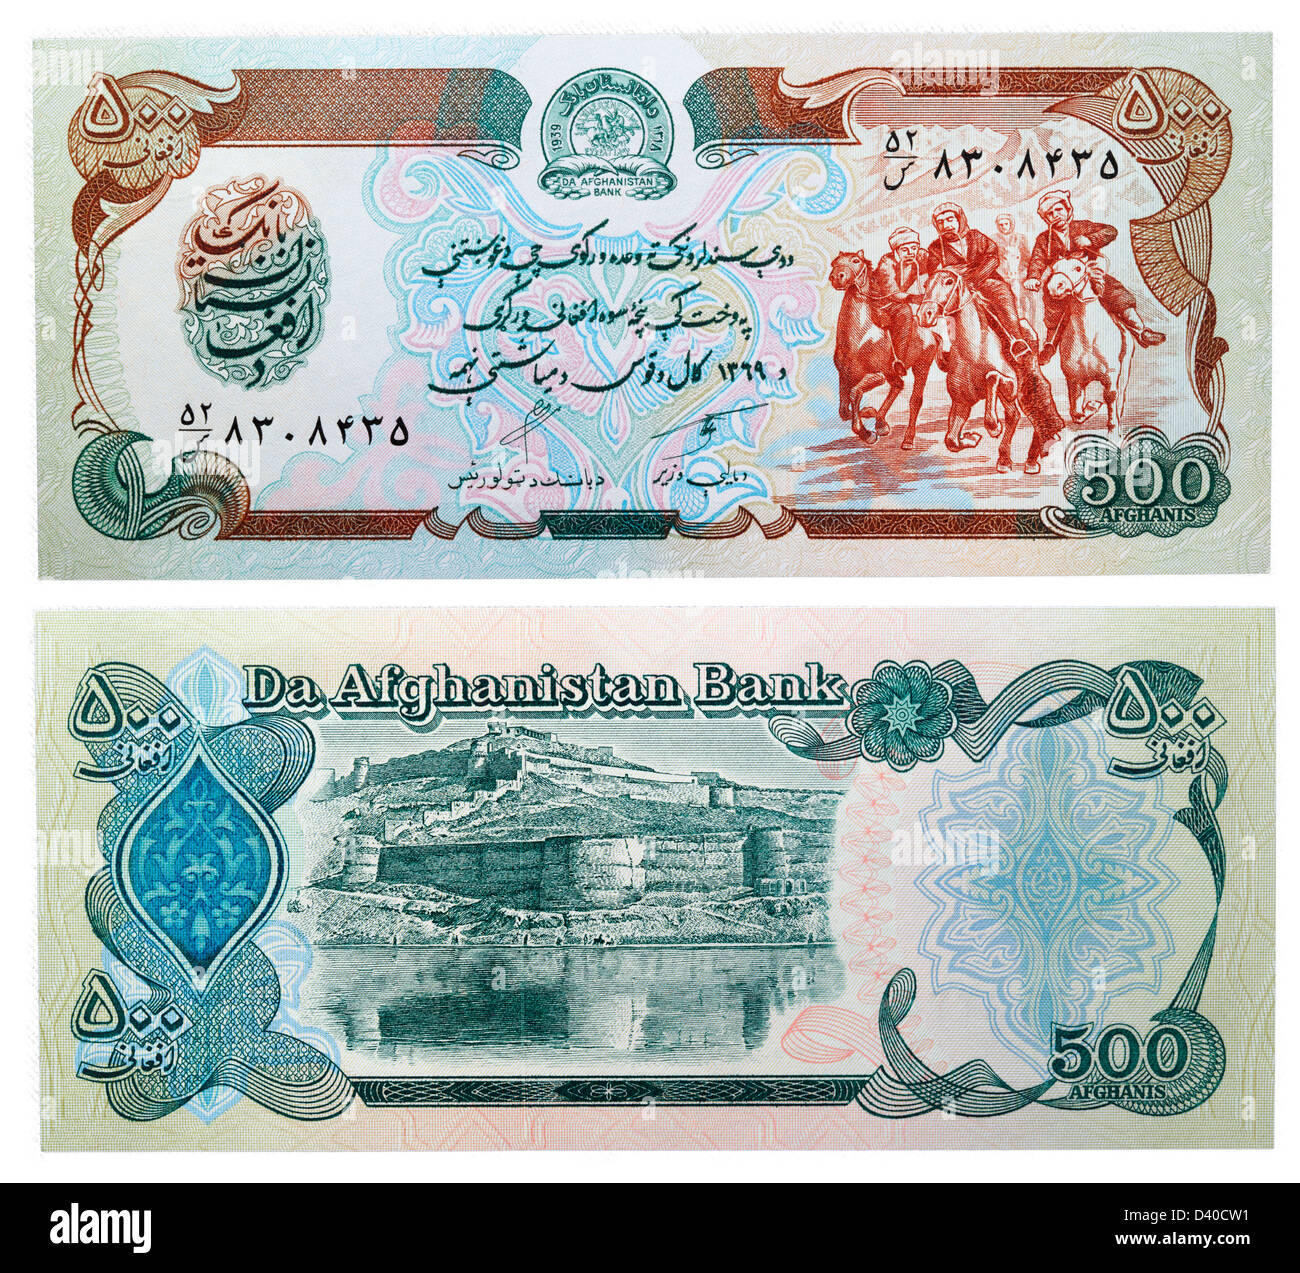 Billet de 500 afghanis (cavaliers en compétition dans Buzkashi et forteresse de Kaboul, Afghanistan, 1979) Banque D'Images